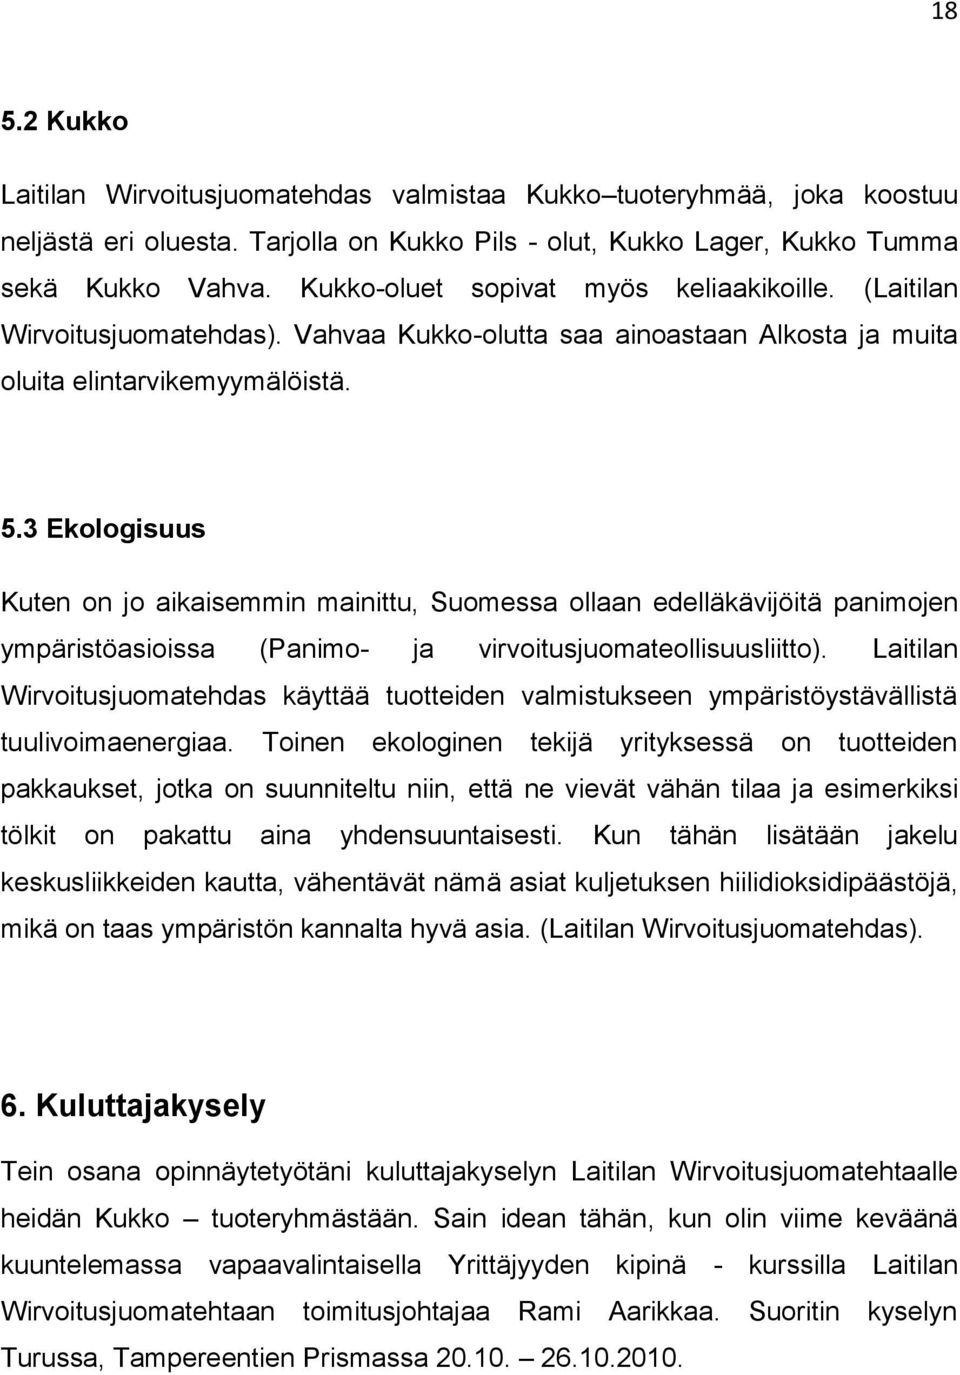 3 Ekologisuus Kuten on jo aikaisemmin mainittu, Suomessa ollaan edelläkävijöitä panimojen ympäristöasioissa (Panimo- ja virvoitusjuomateollisuusliitto).